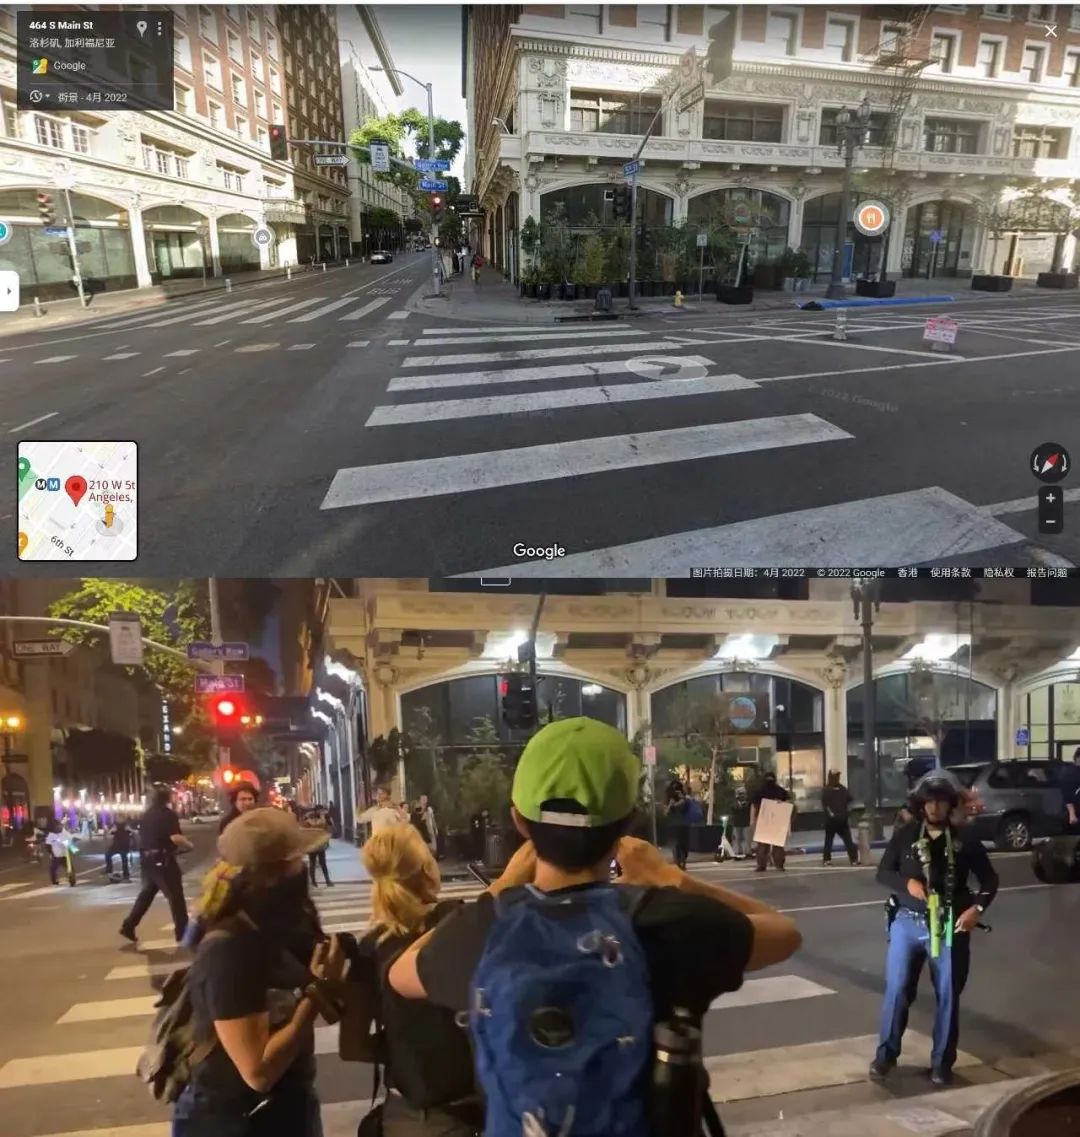 谷歌街景与视频内容比对，可见同样的写有Gallery Row和Main St的路牌。